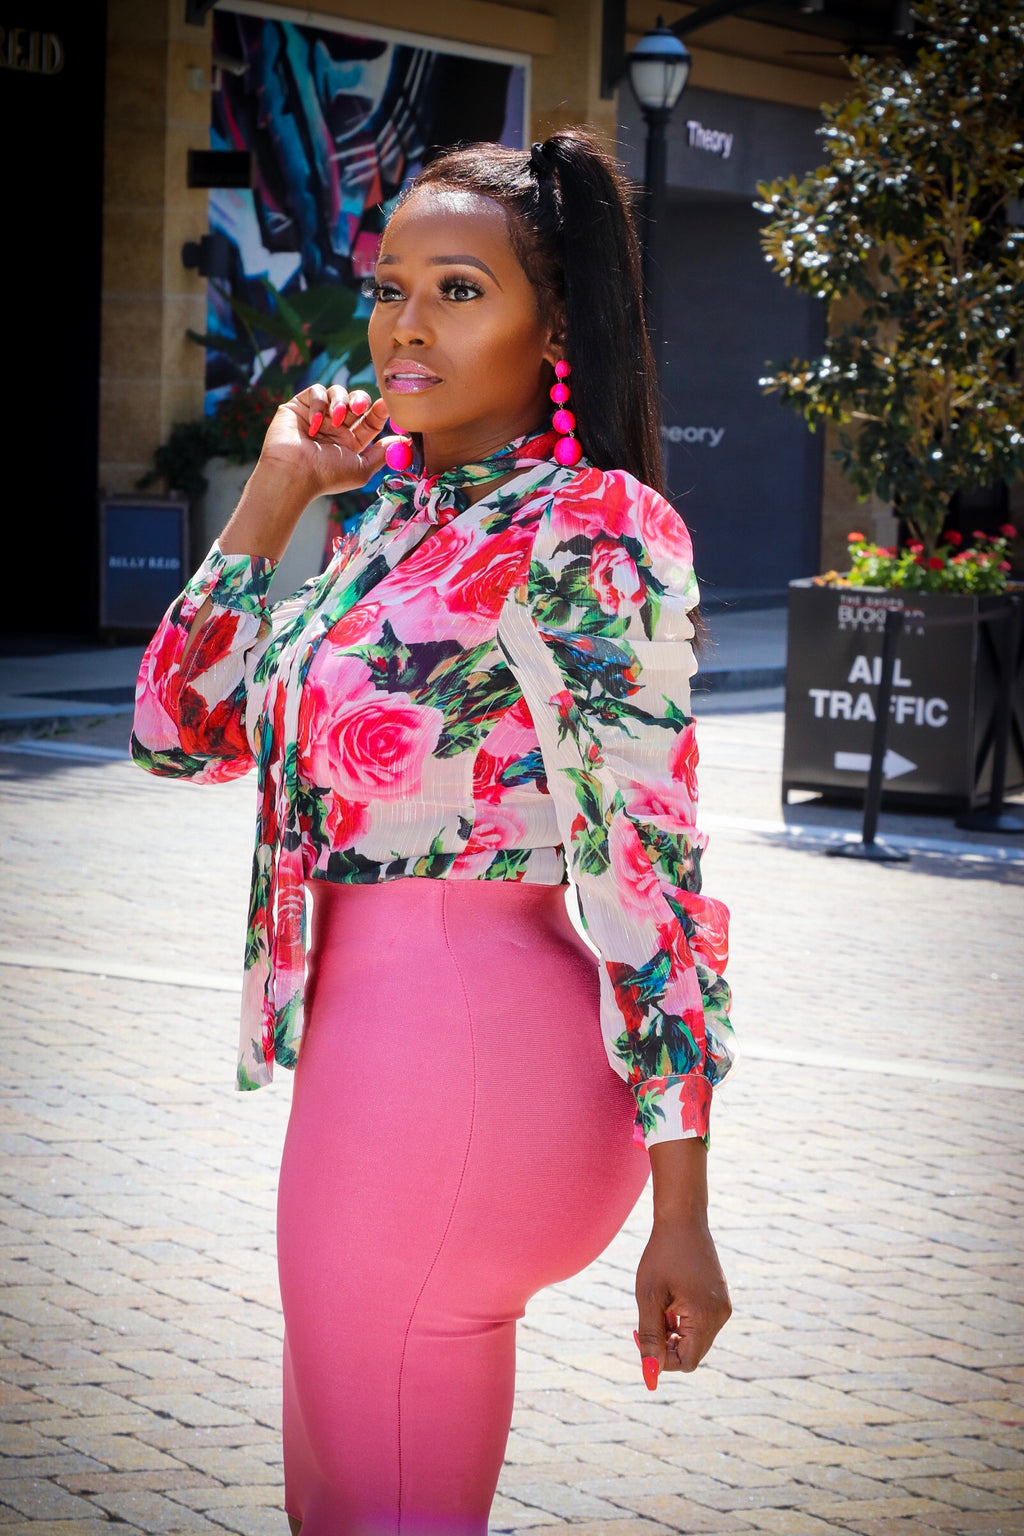 Chanel Rose Pink Multi Color Floral Print Neck Tie Blouse - A' LA' POSH Clothing